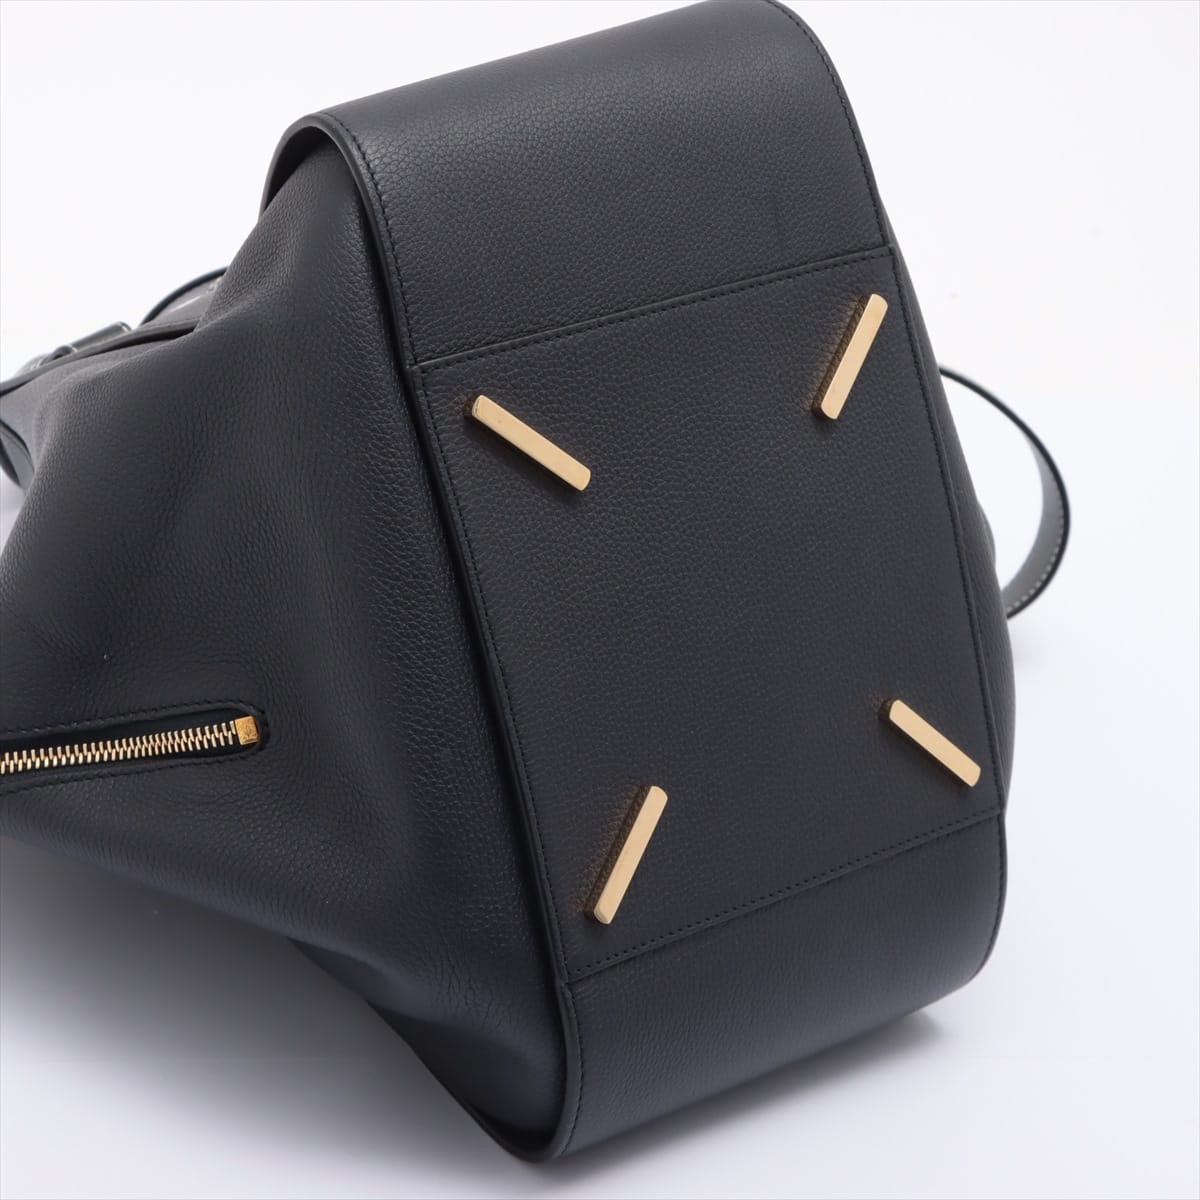 Loewe Hammock Medium Leather 2way handbag Black x Navy